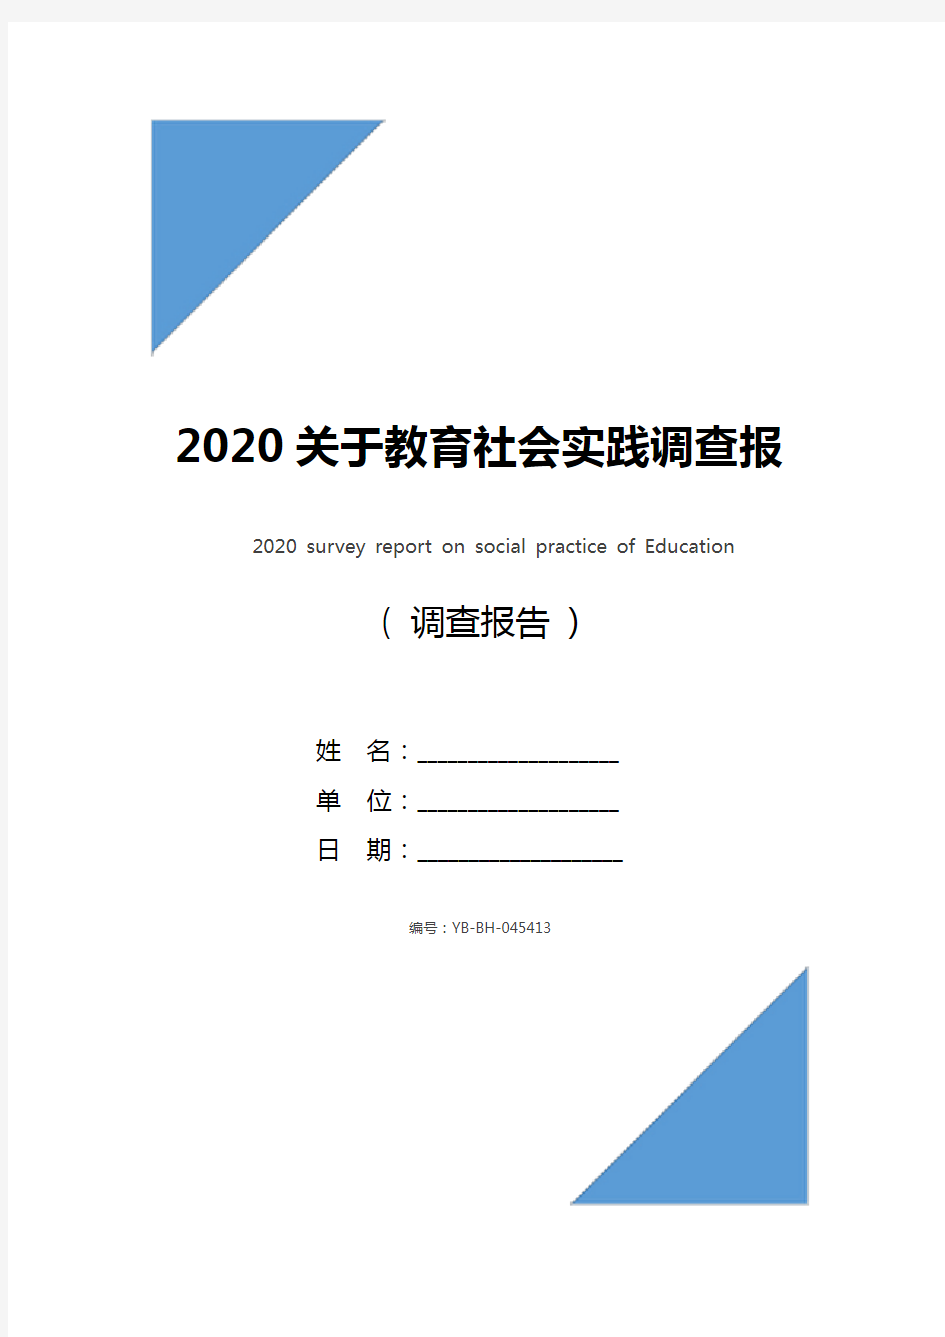 2020关于教育社会实践调查报告